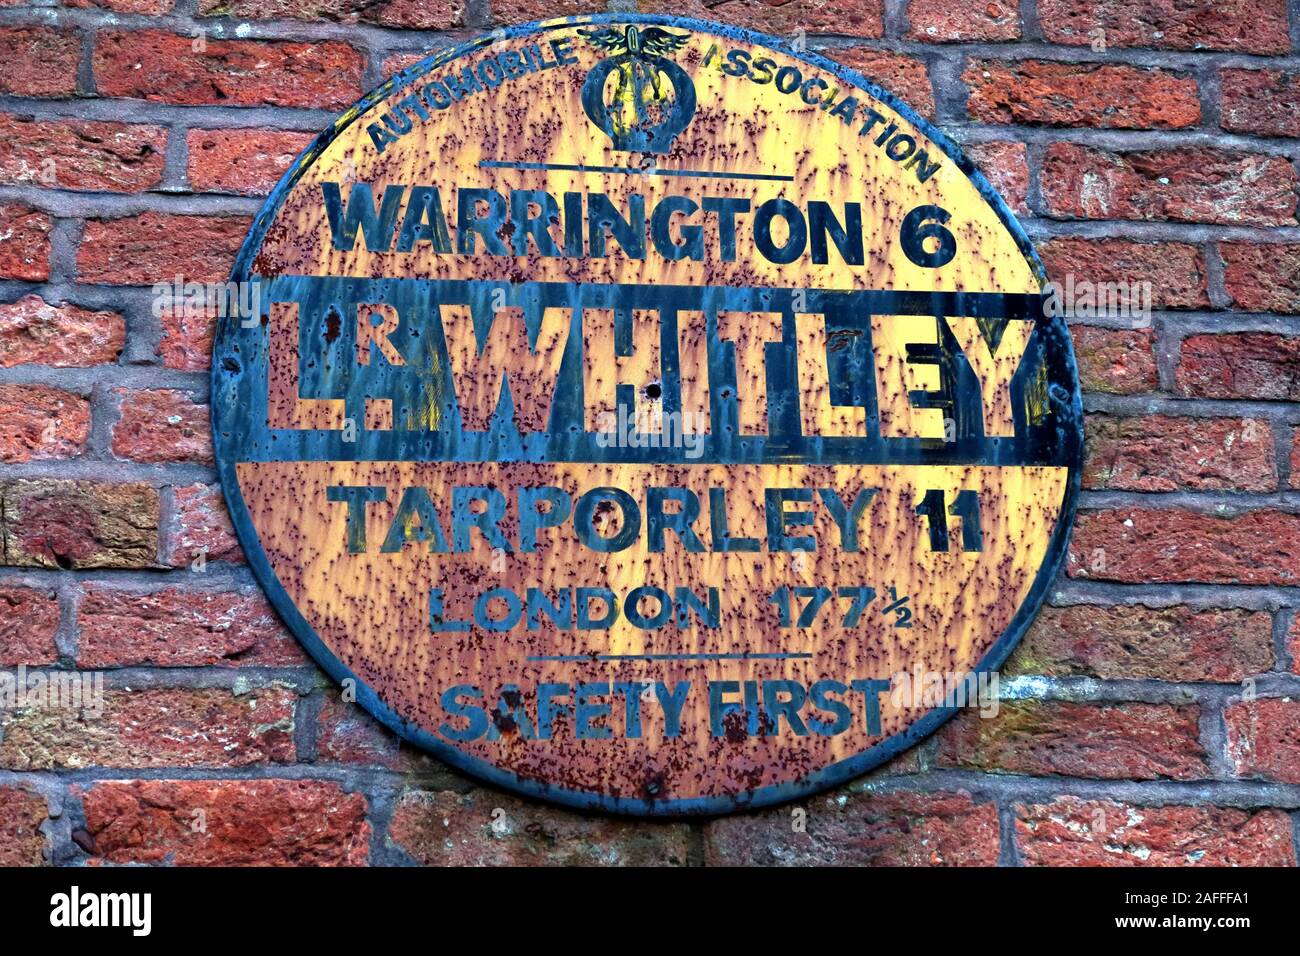 Signe de l'association automobile historique, panneau Lower Whitley, Warrington 6 miles, Tarporley 11 miles, Londres 177,la sécurité d'abord Banque D'Images